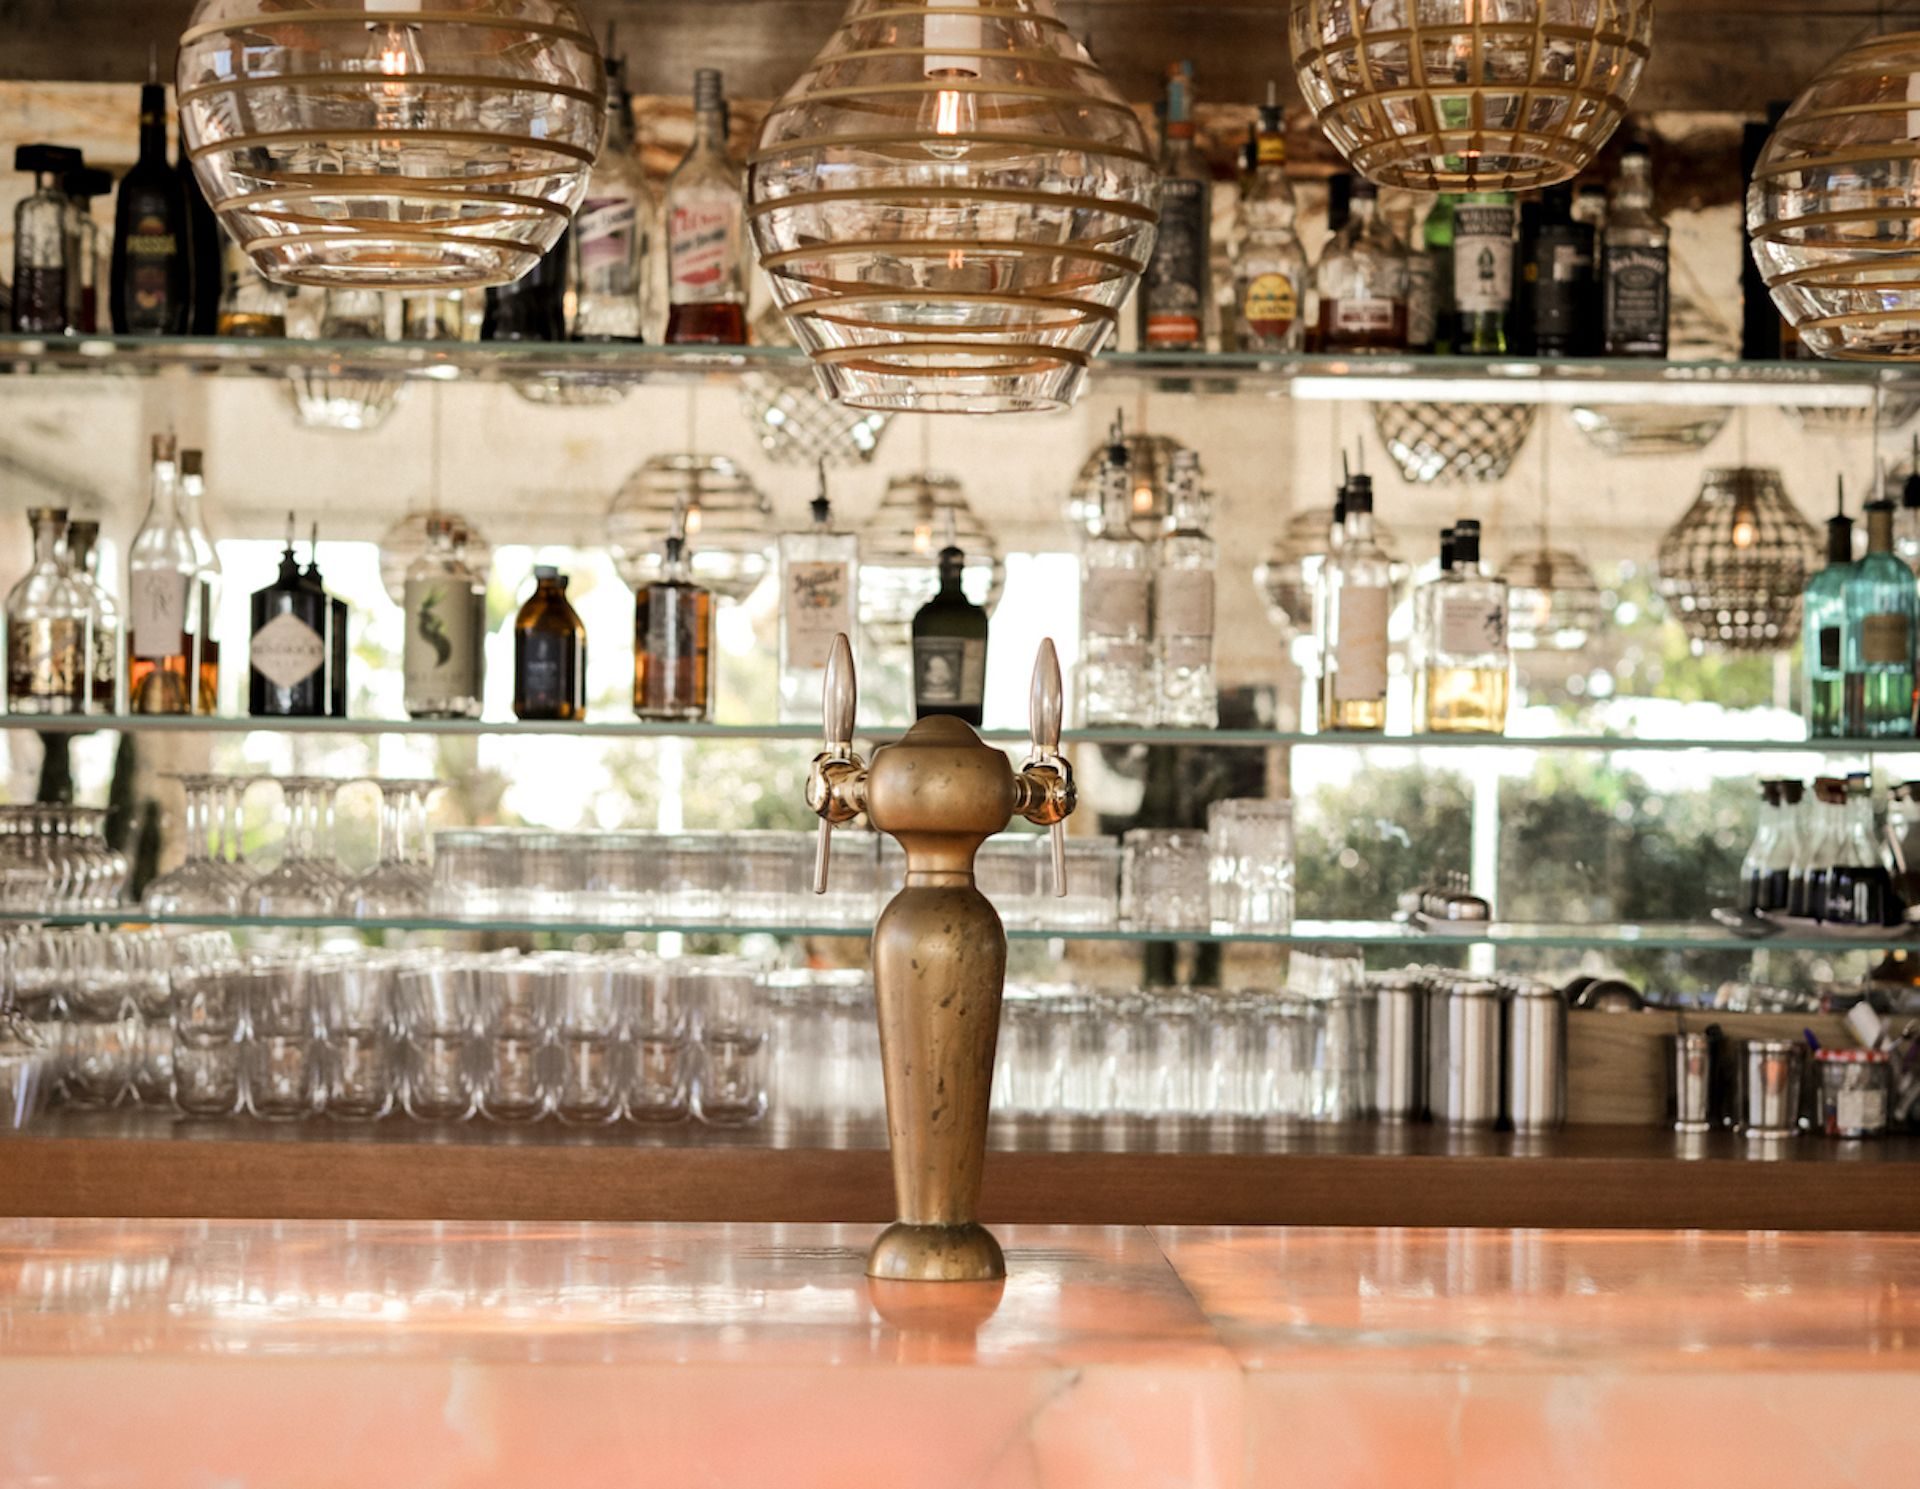 Bar de l'Hotel la Reine Jeanne @StephanieDavilma